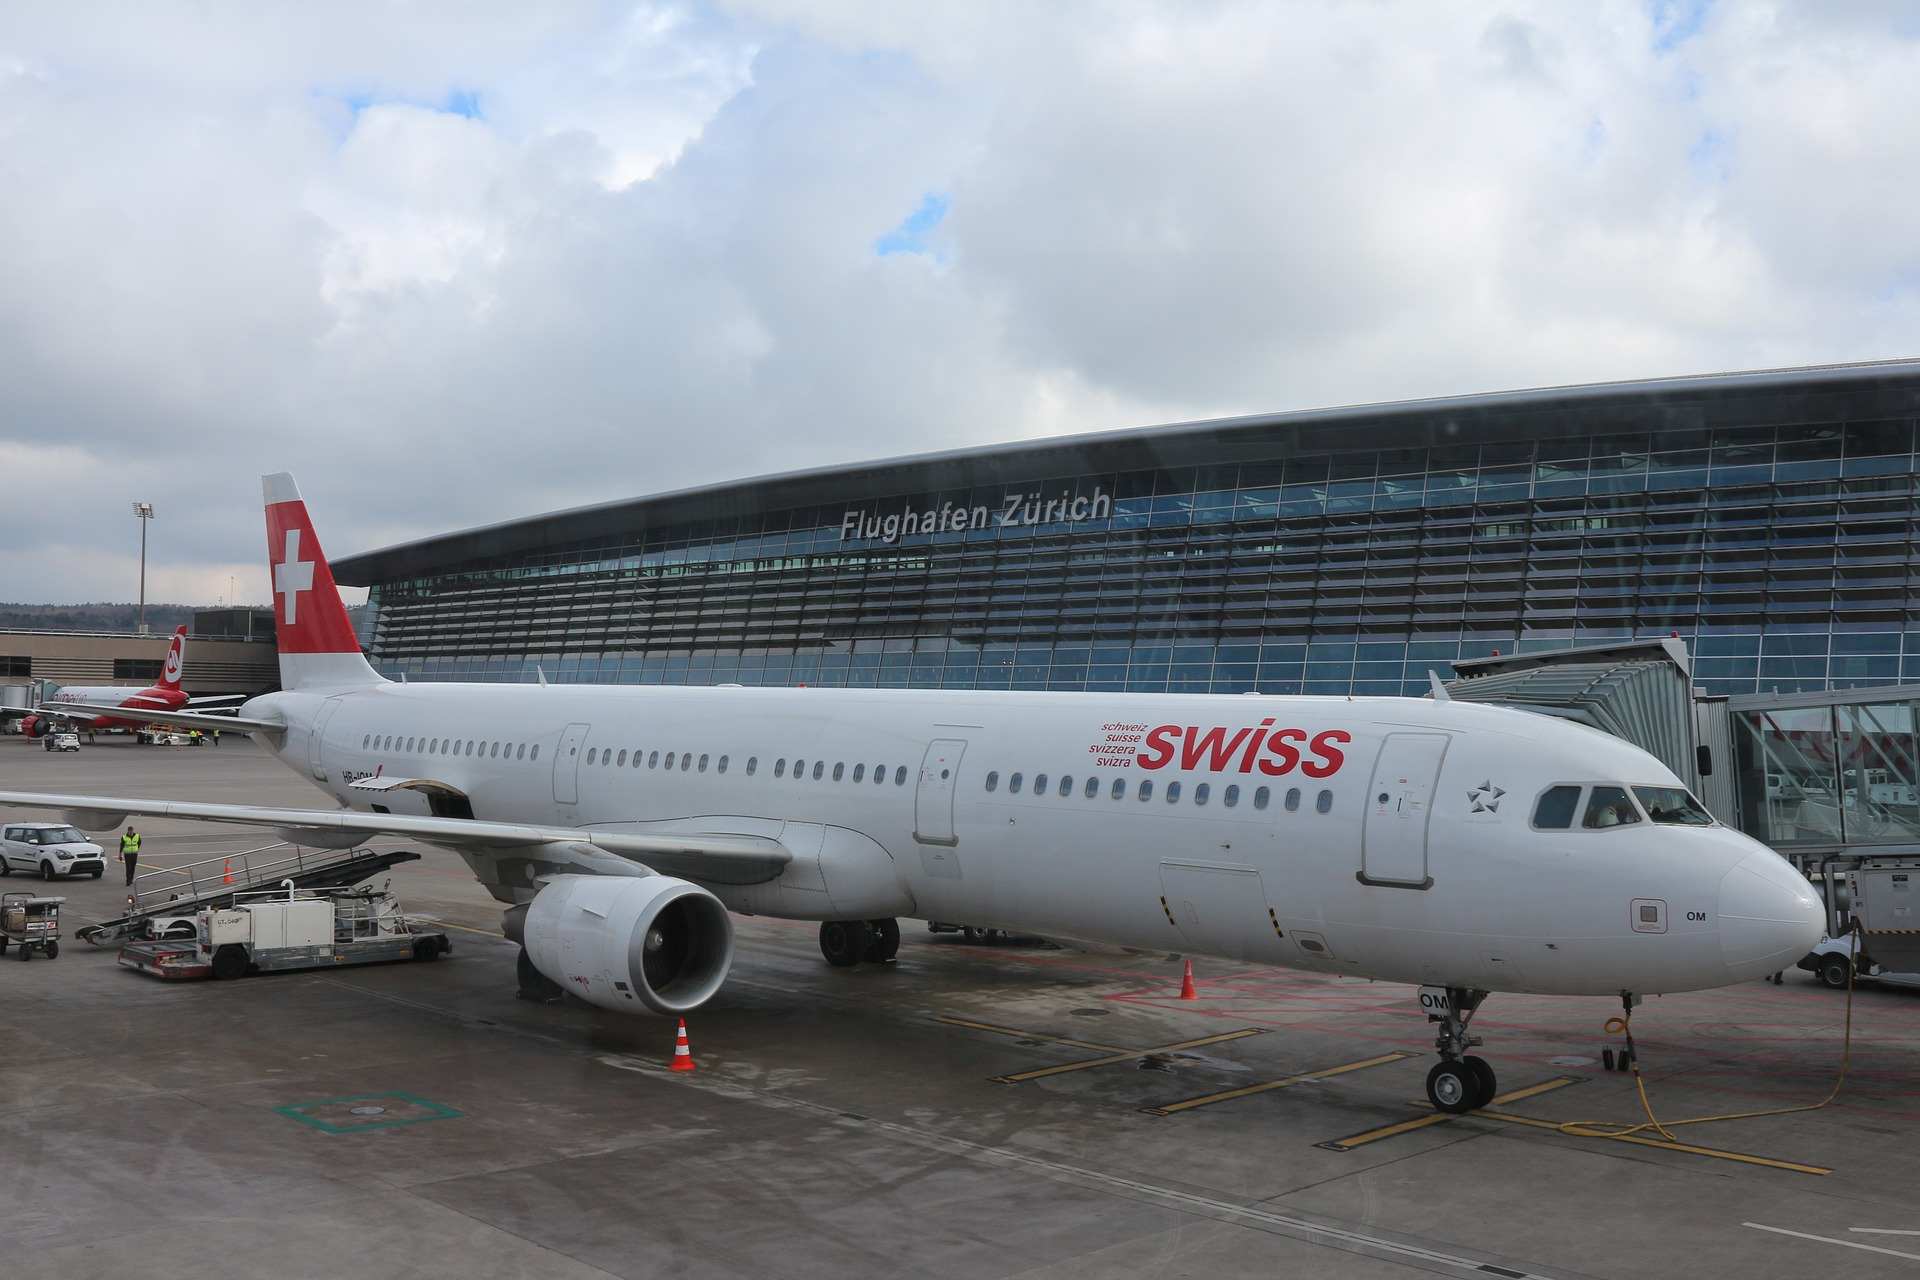 Flughafen Zürich Swiss Flugzeug auf dem Vorfeld